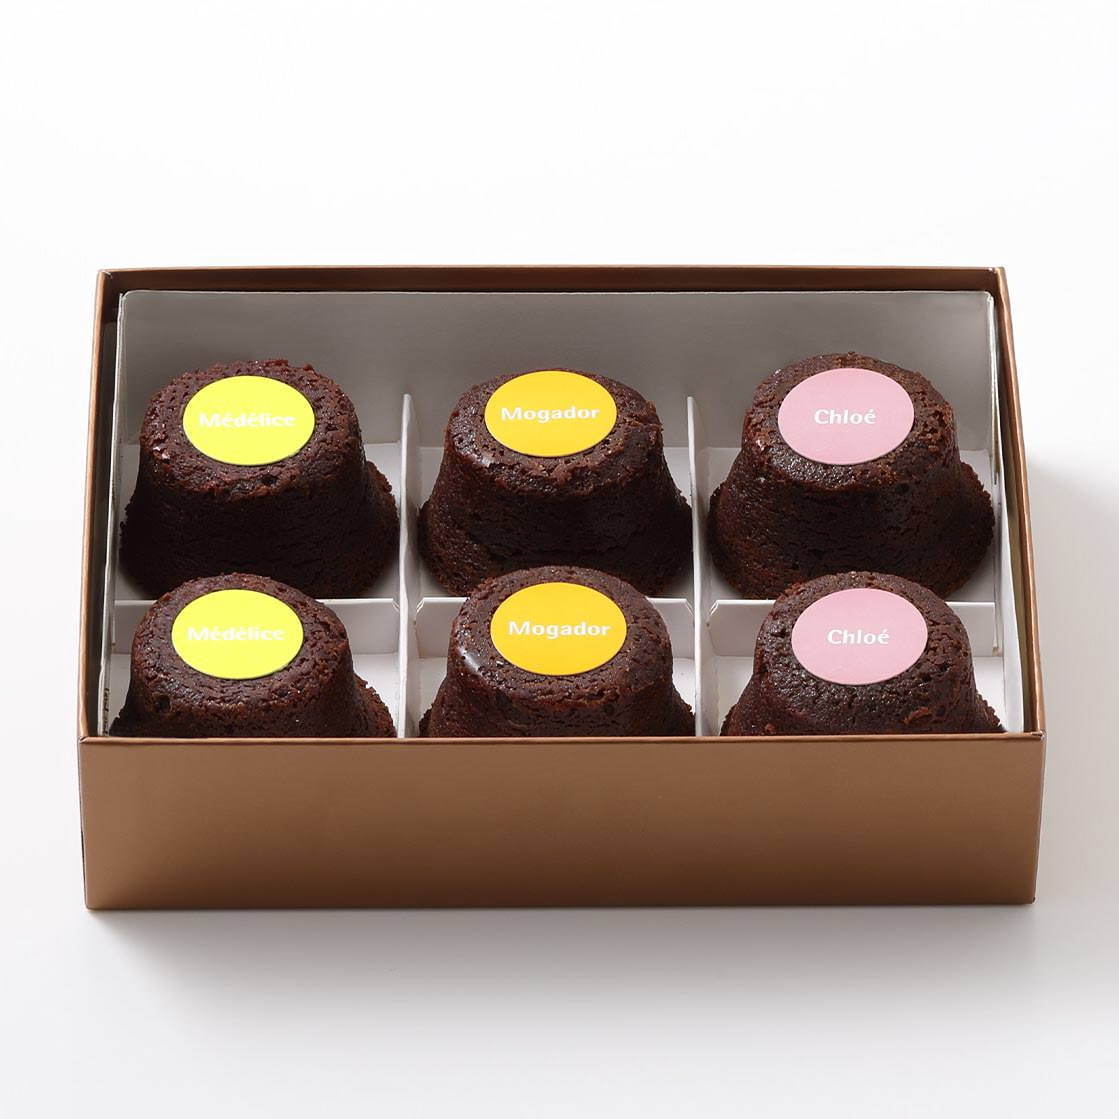 ピエール・エルメ・パリのバレンタイン"杉の実"チョコレートやショコラマカロン、ハート型ケーキも｜写真1